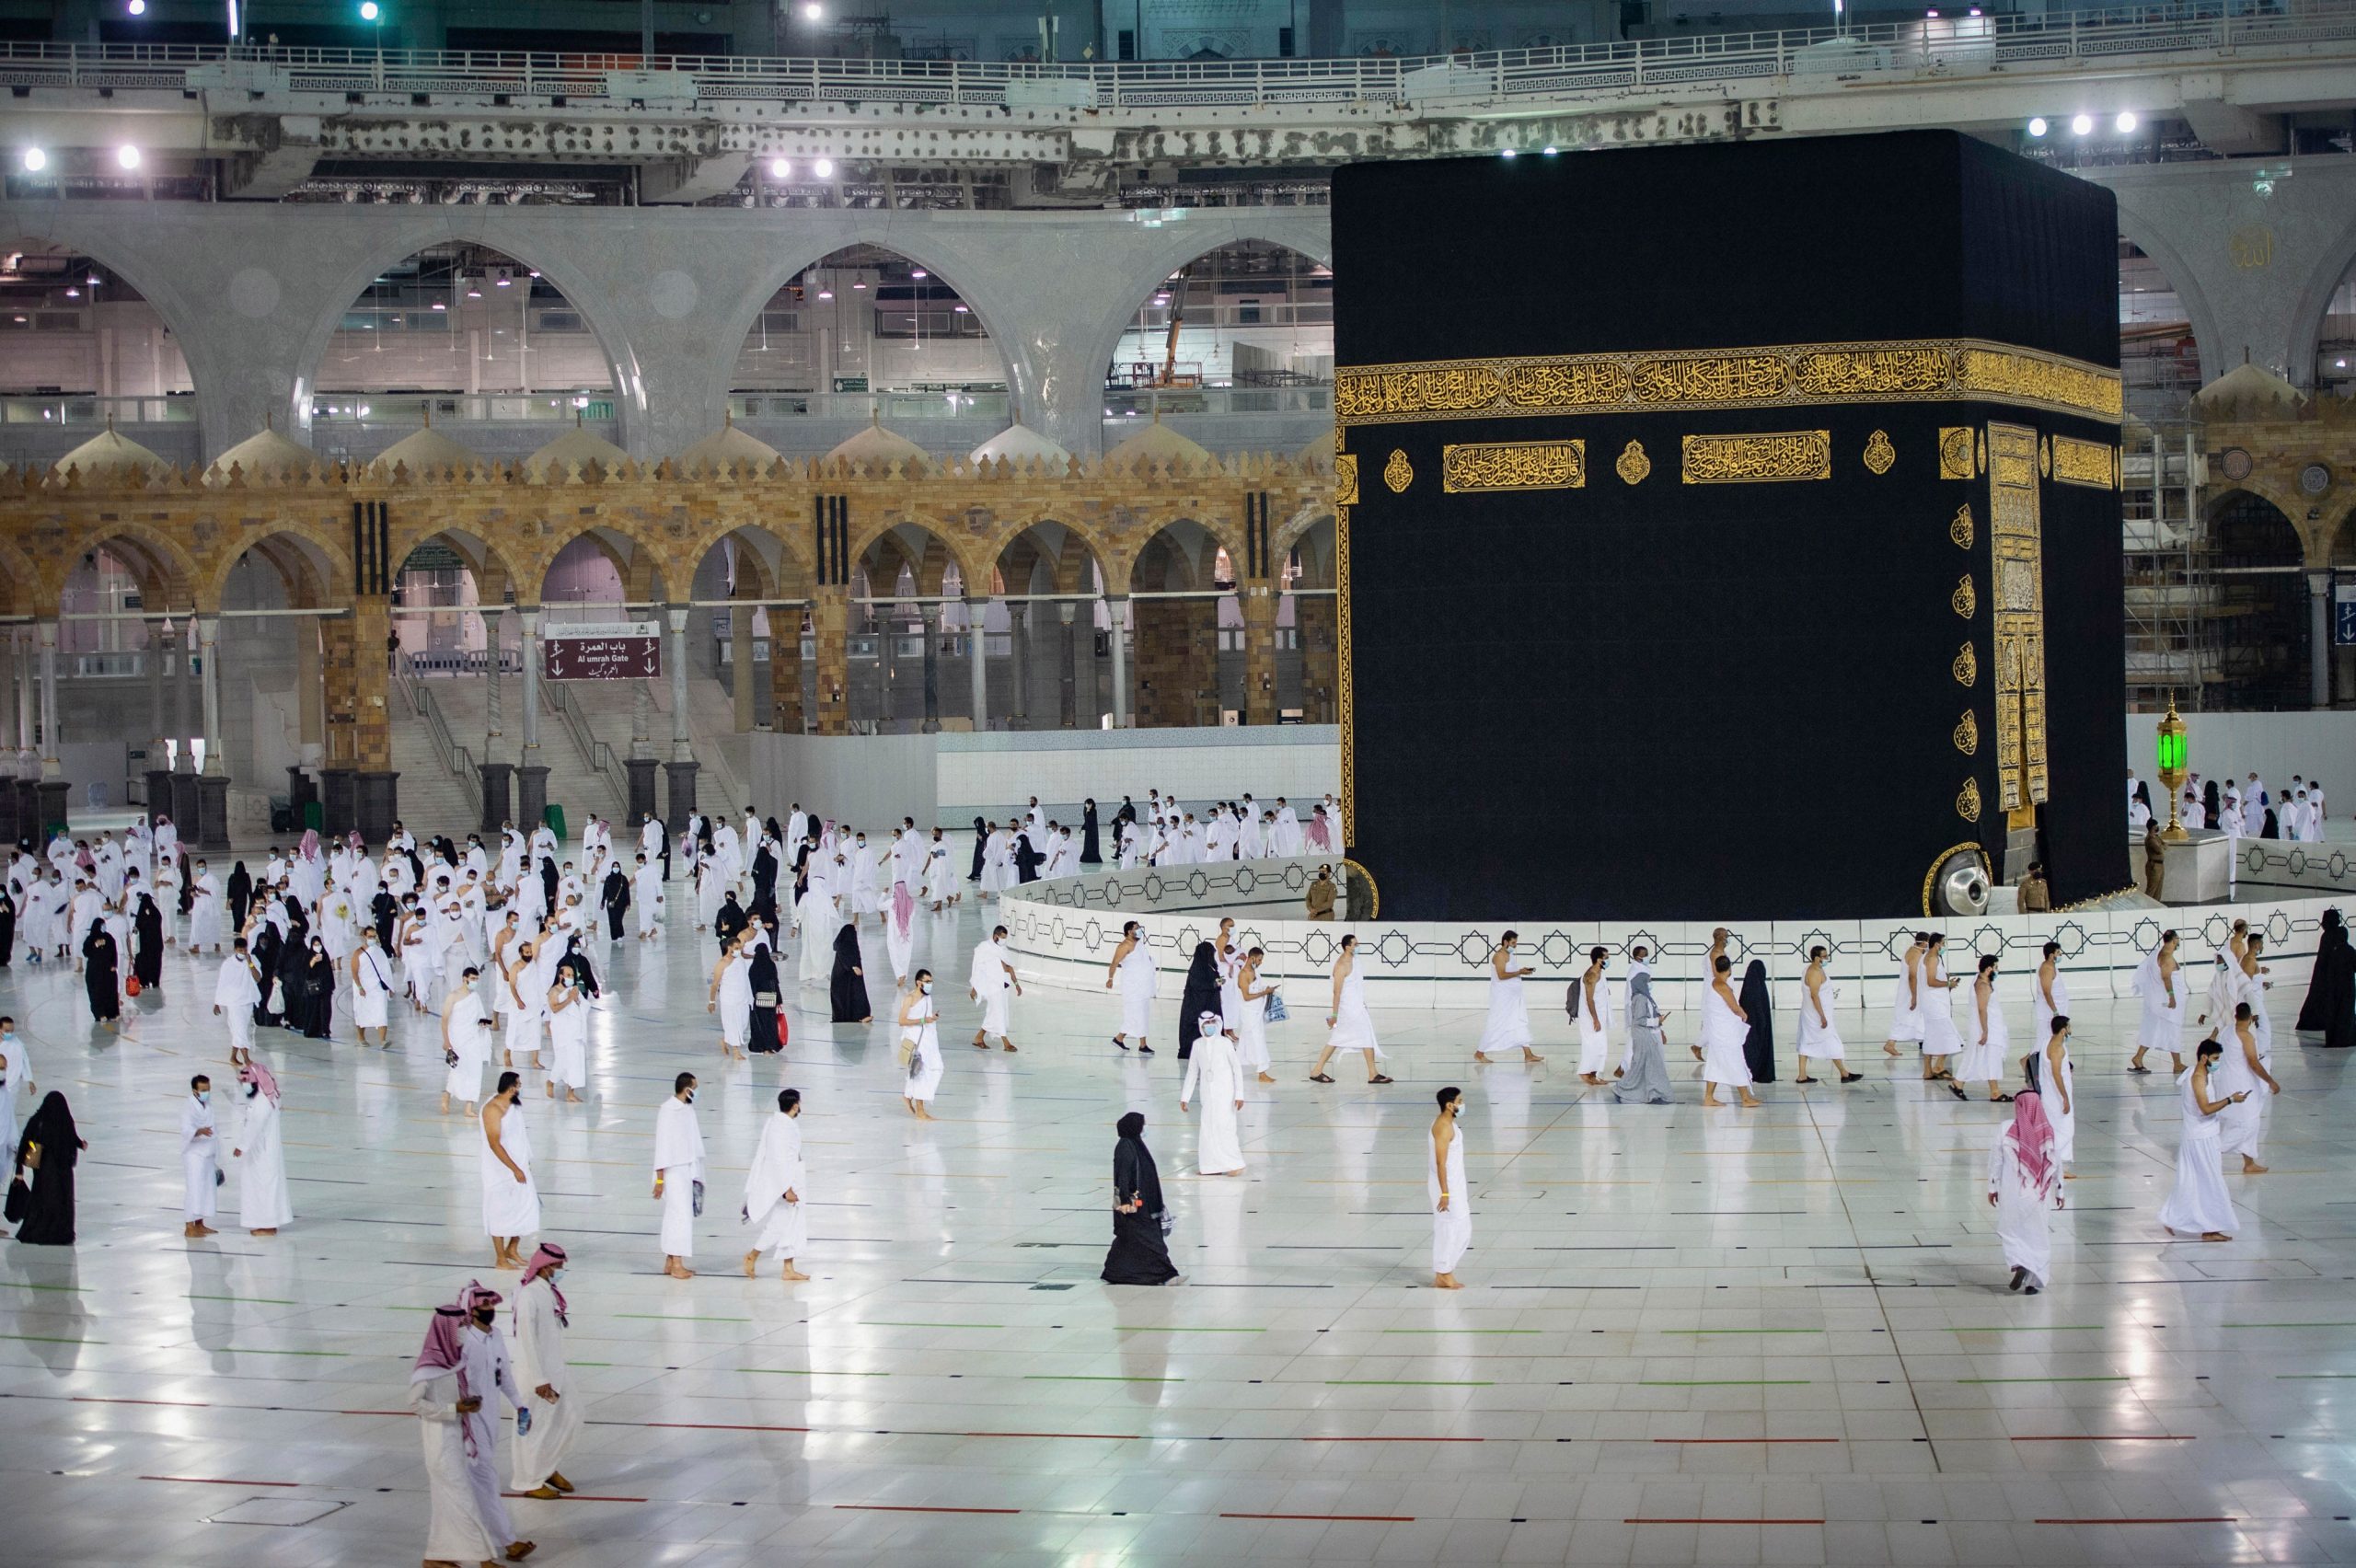 हज यात्रा 2021 को लेकर बड़ा ऐलान, सऊदी अरब से बाहर के लोगों को नहीं मिलेगा मौका